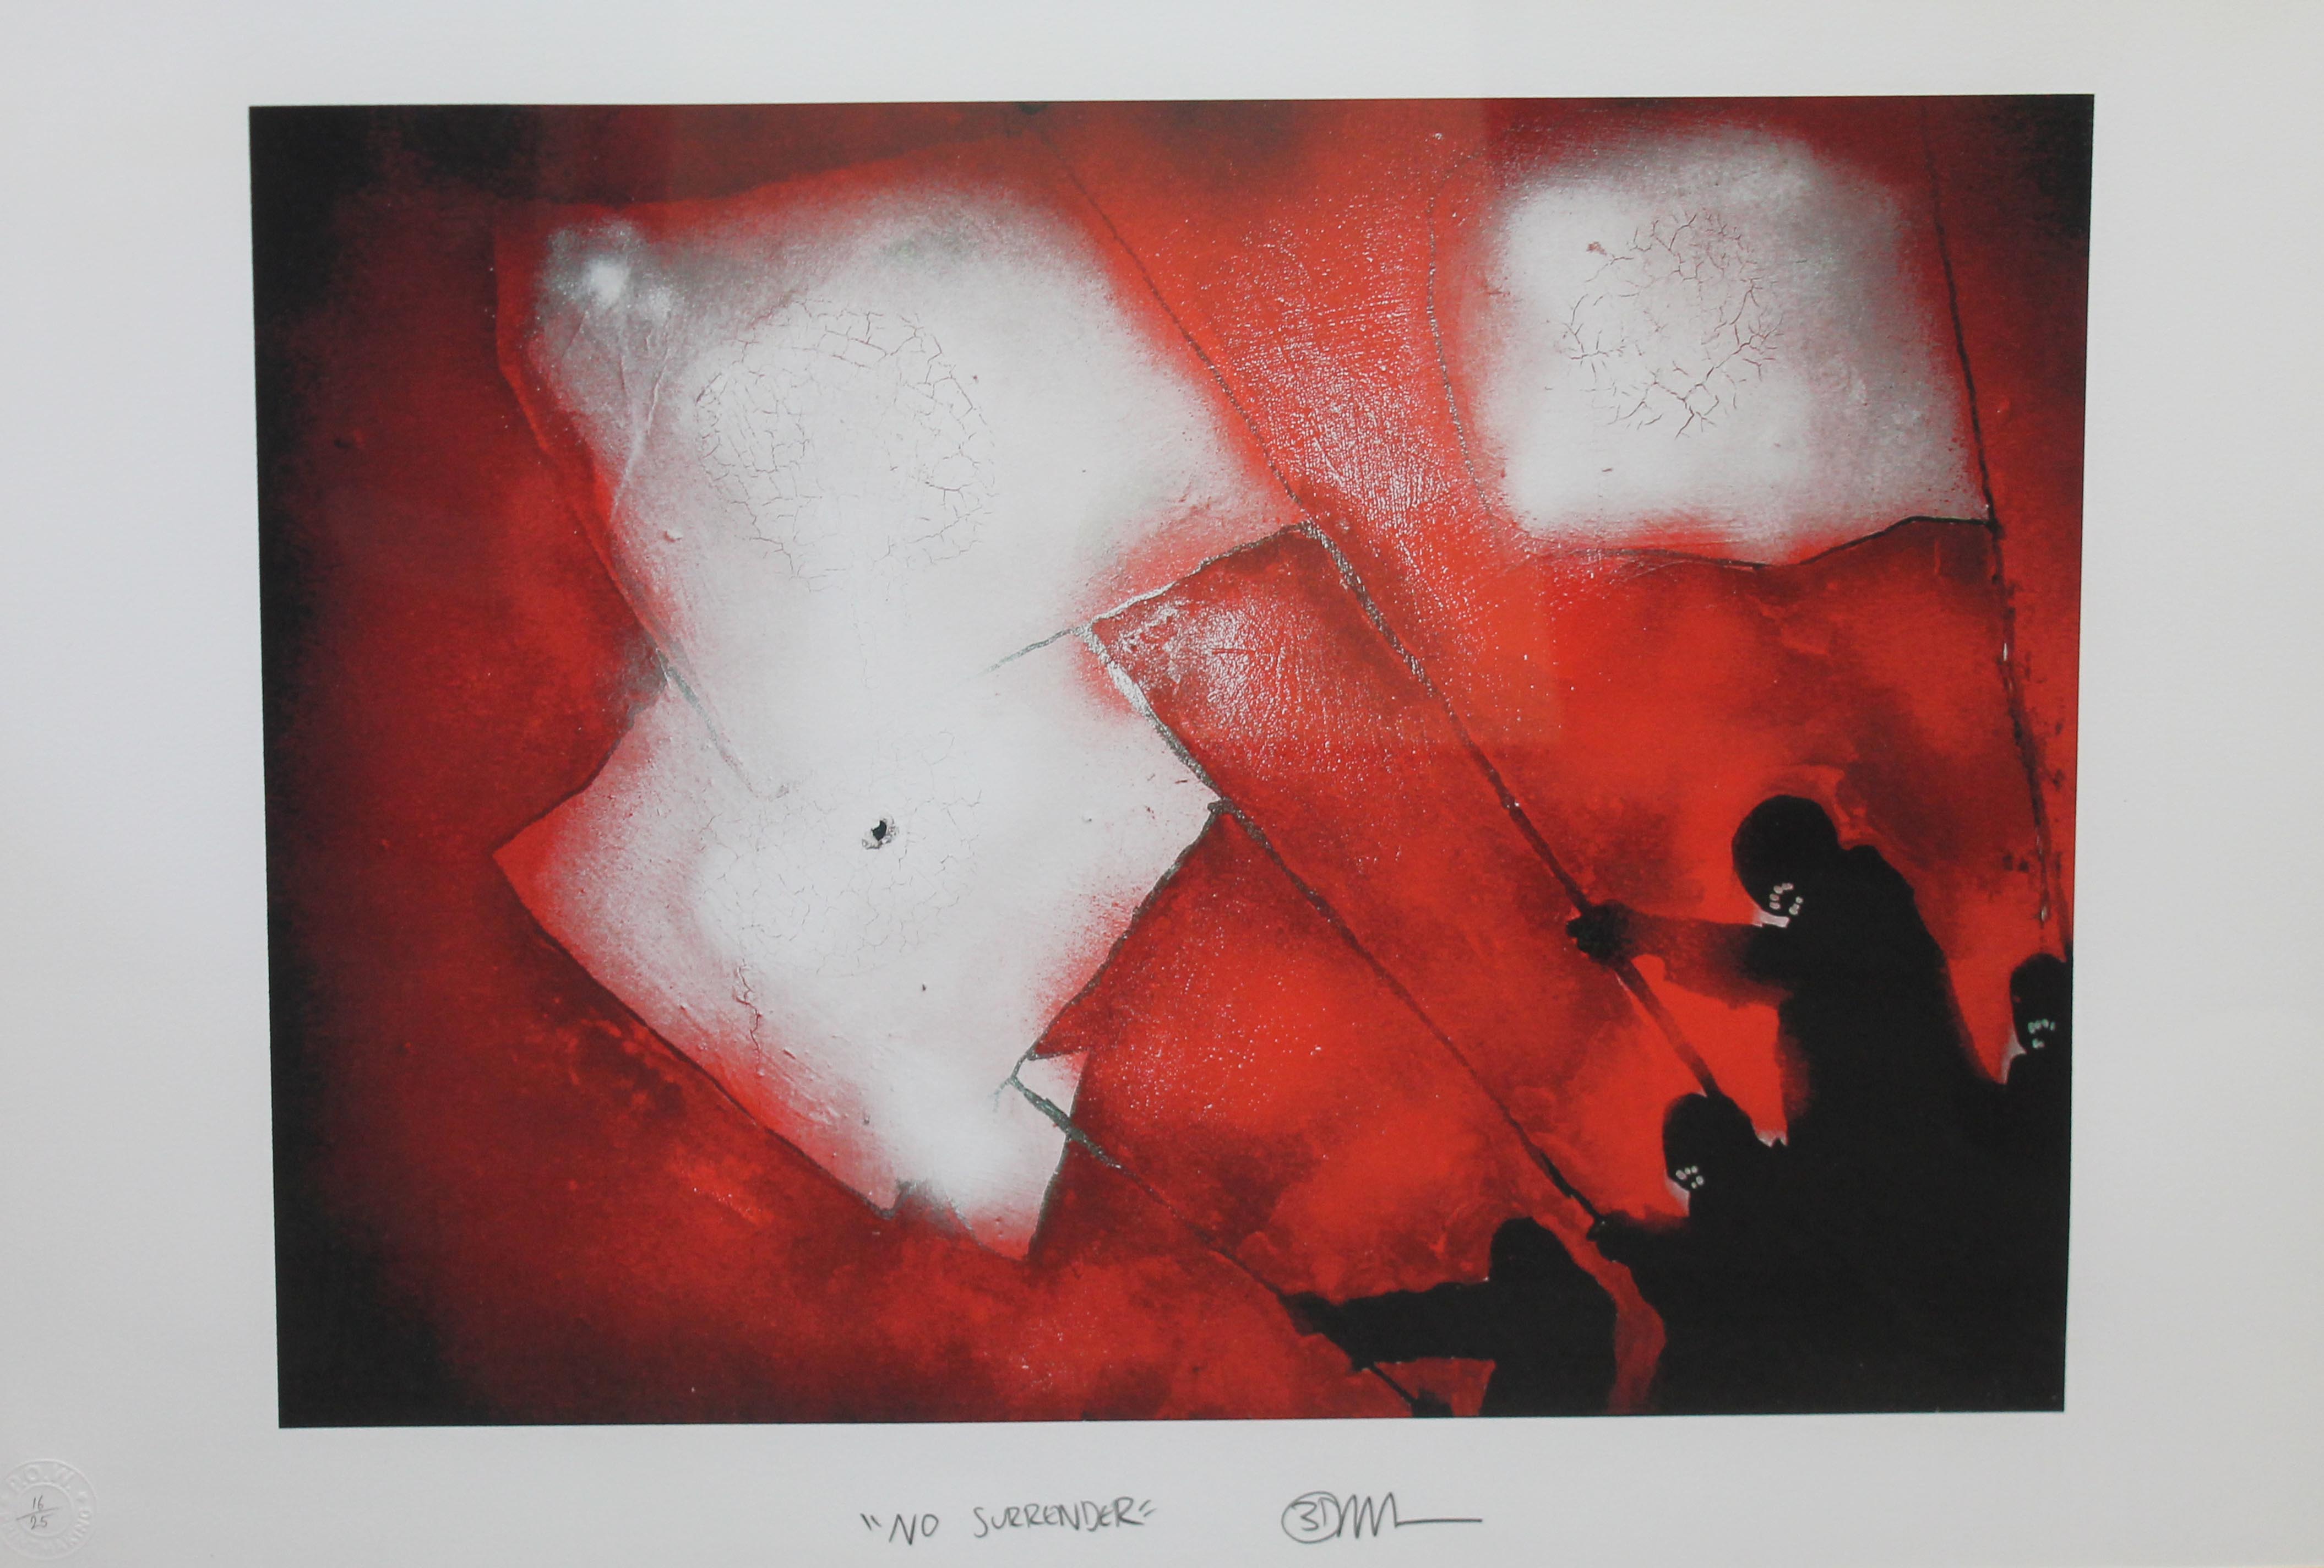 Robert Del Naja '3D Massive Attack' (b1965), "No Surrender", screen print, limited edition no. 16/